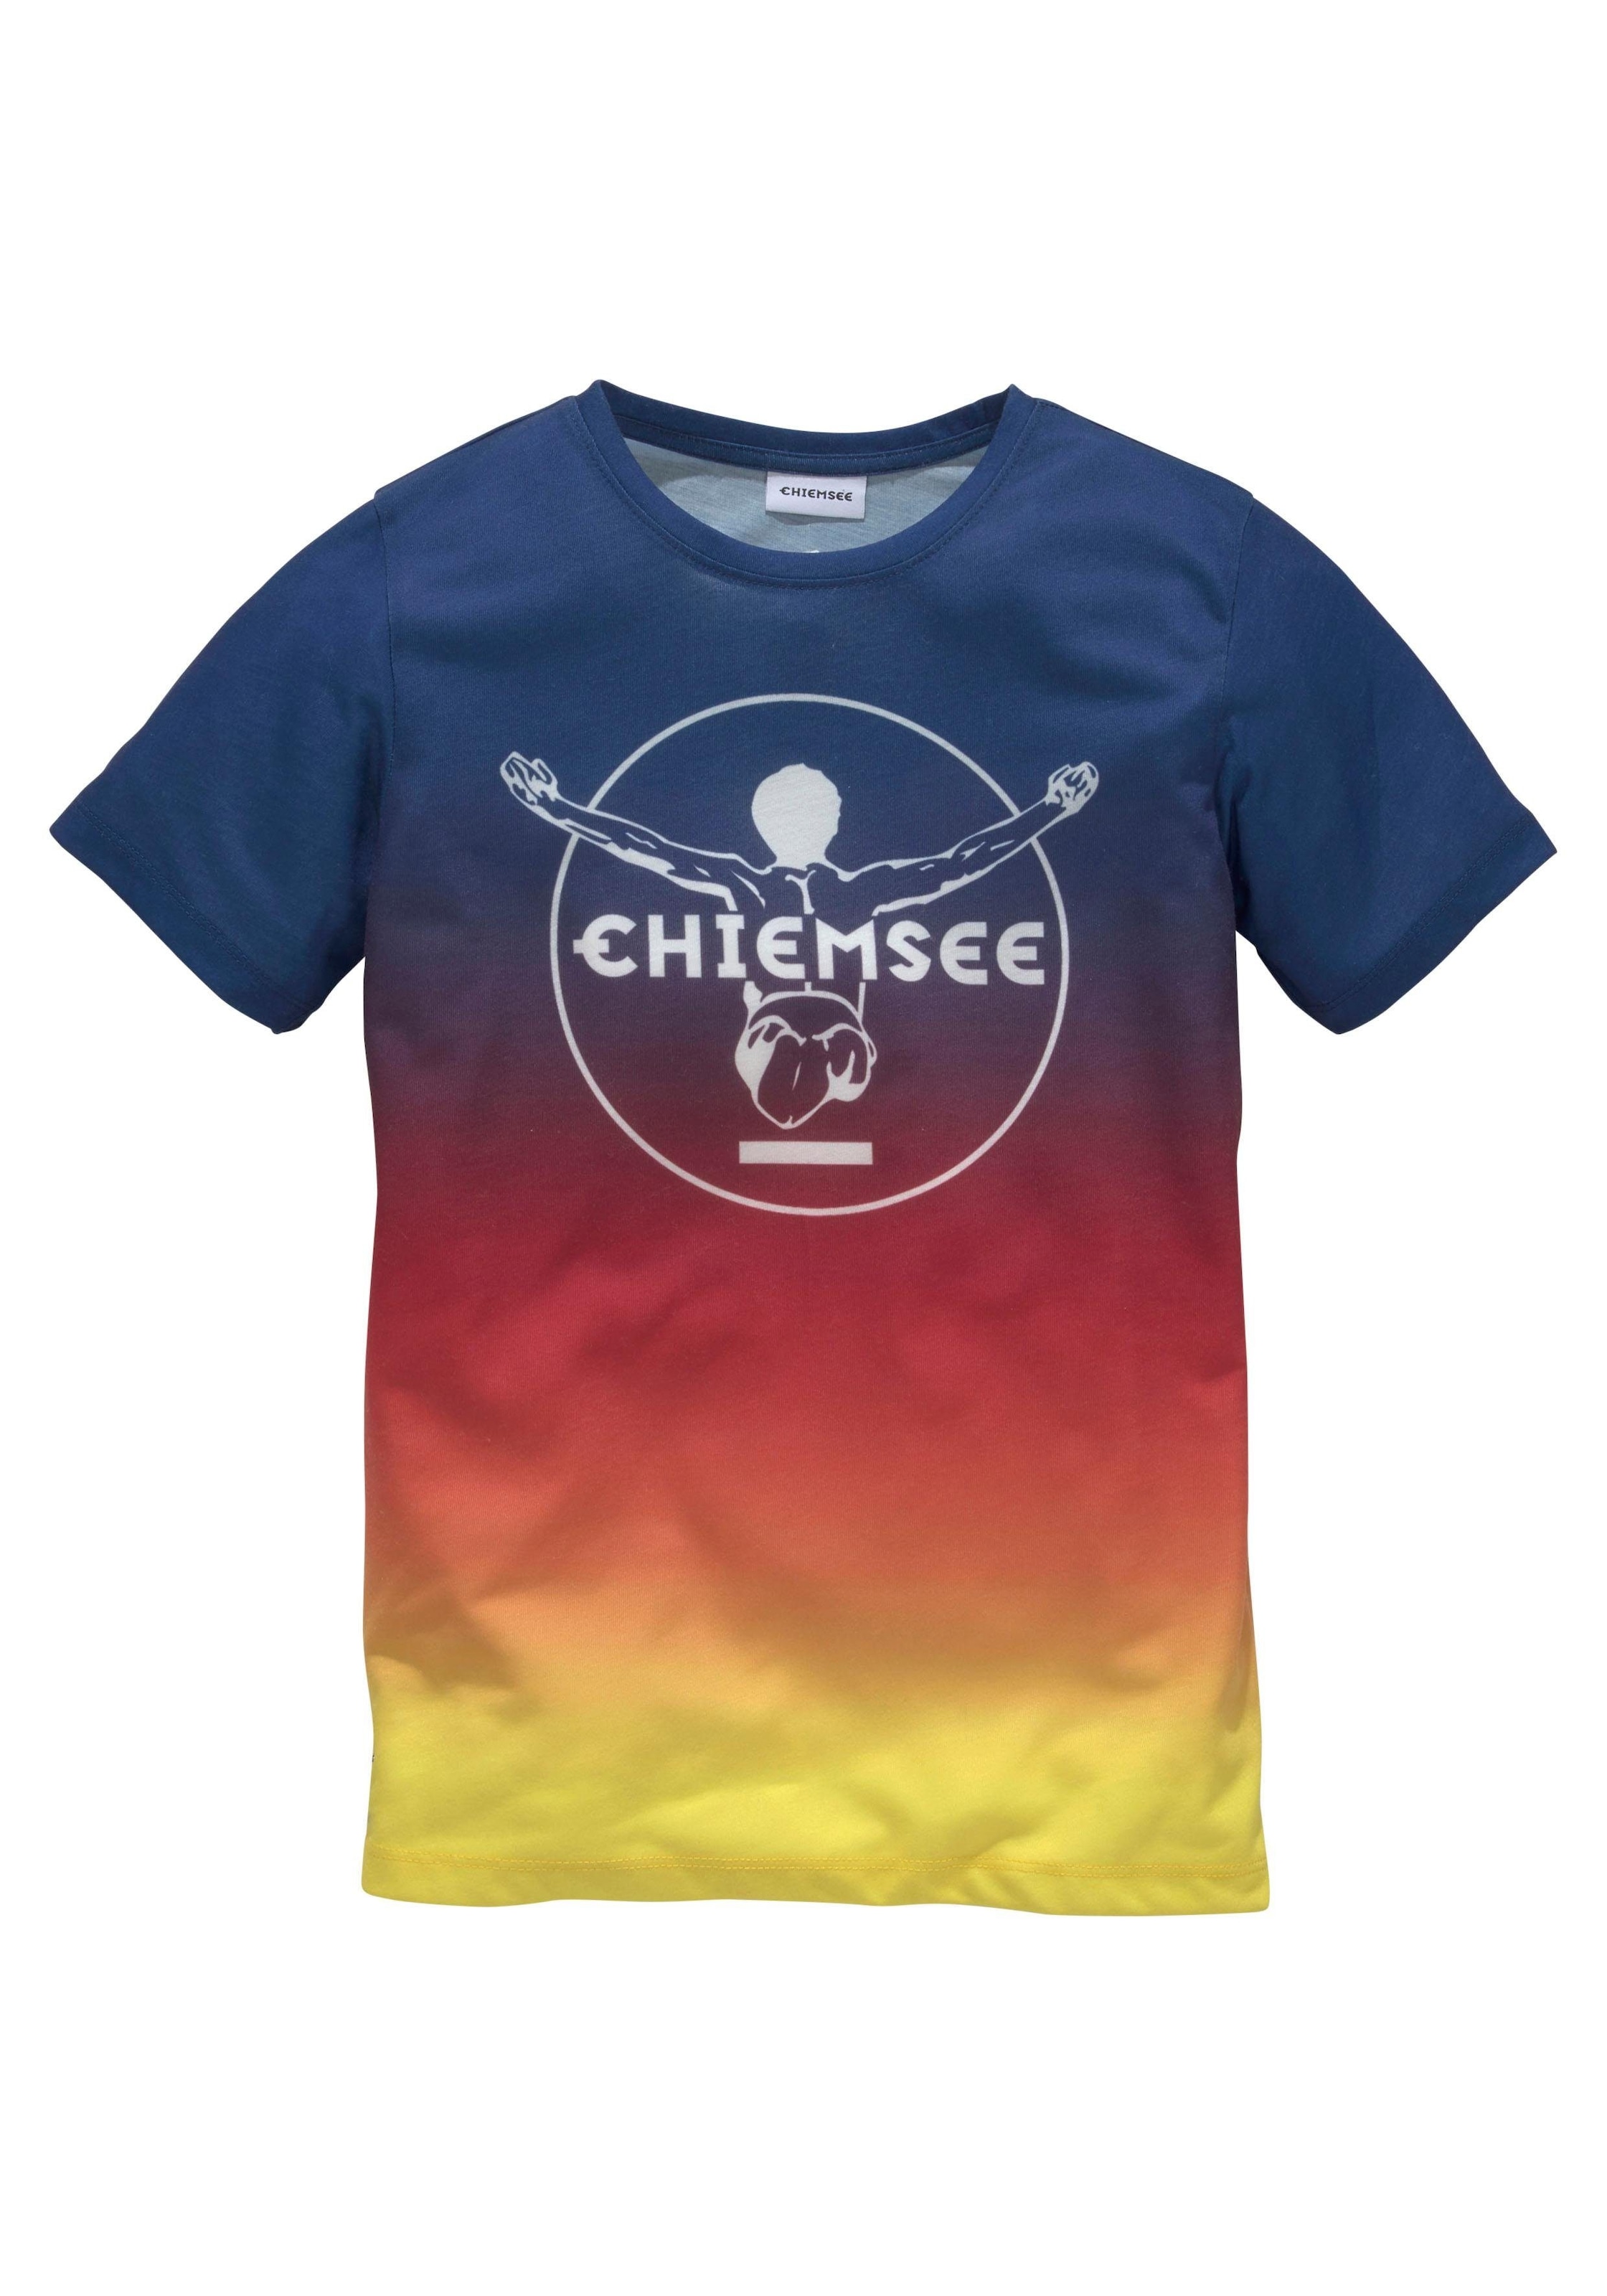 Druck vorn Farbverlauf T-Shirt, im Chiemsee mit